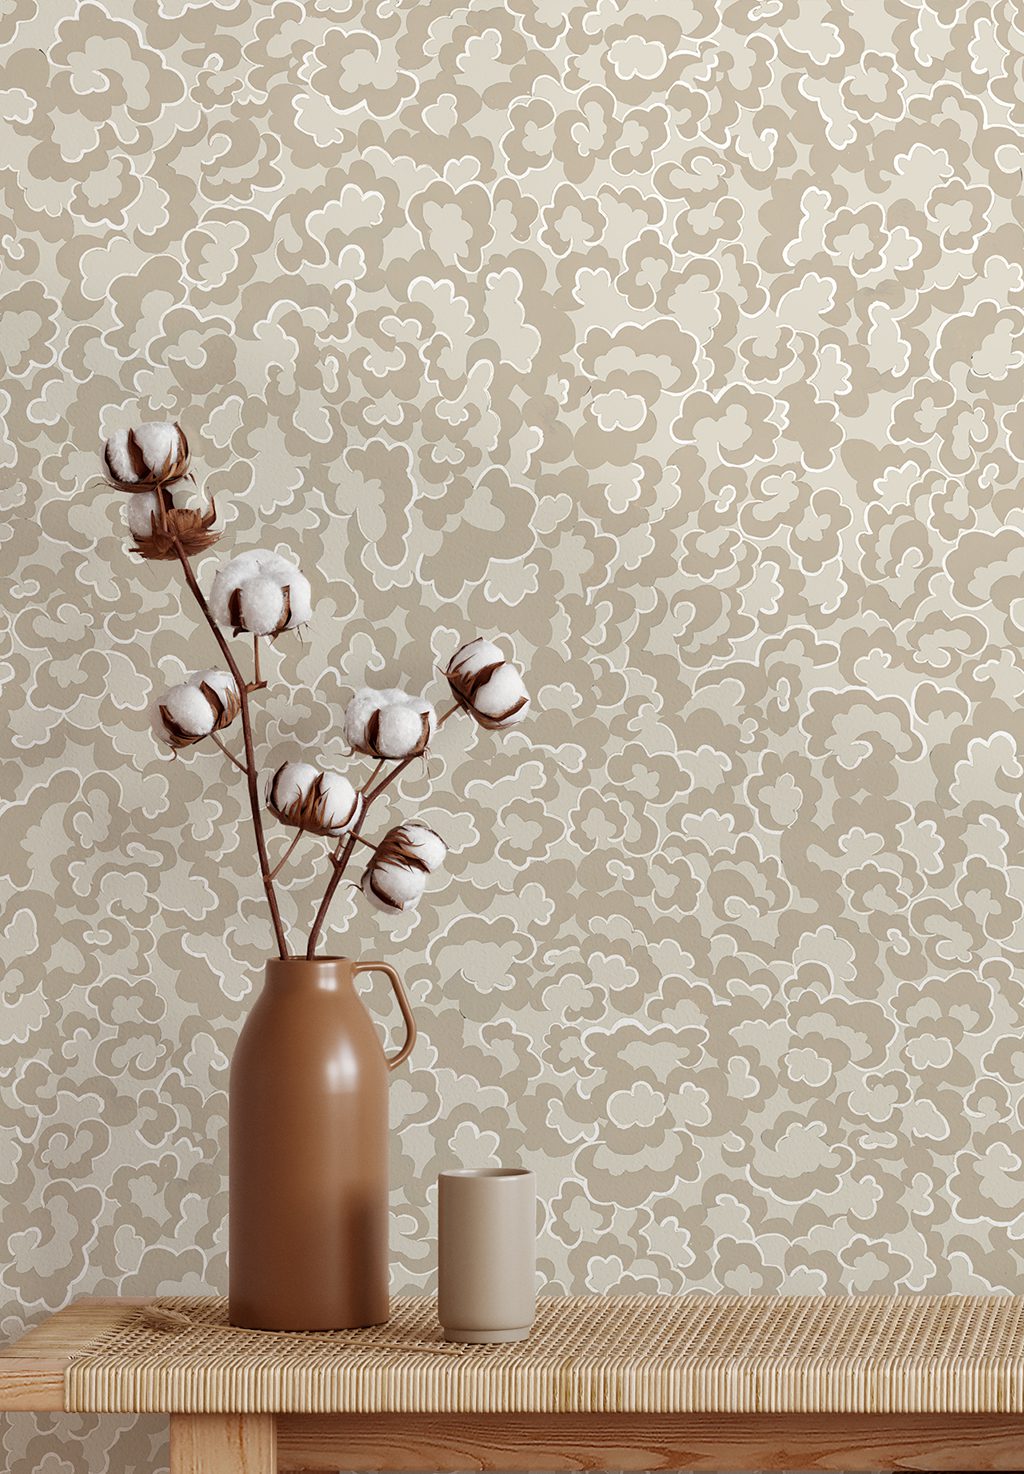 Josephine-Munsey-wallpaper-clouds-small-pattern-repeat-tonal-stylized-alma